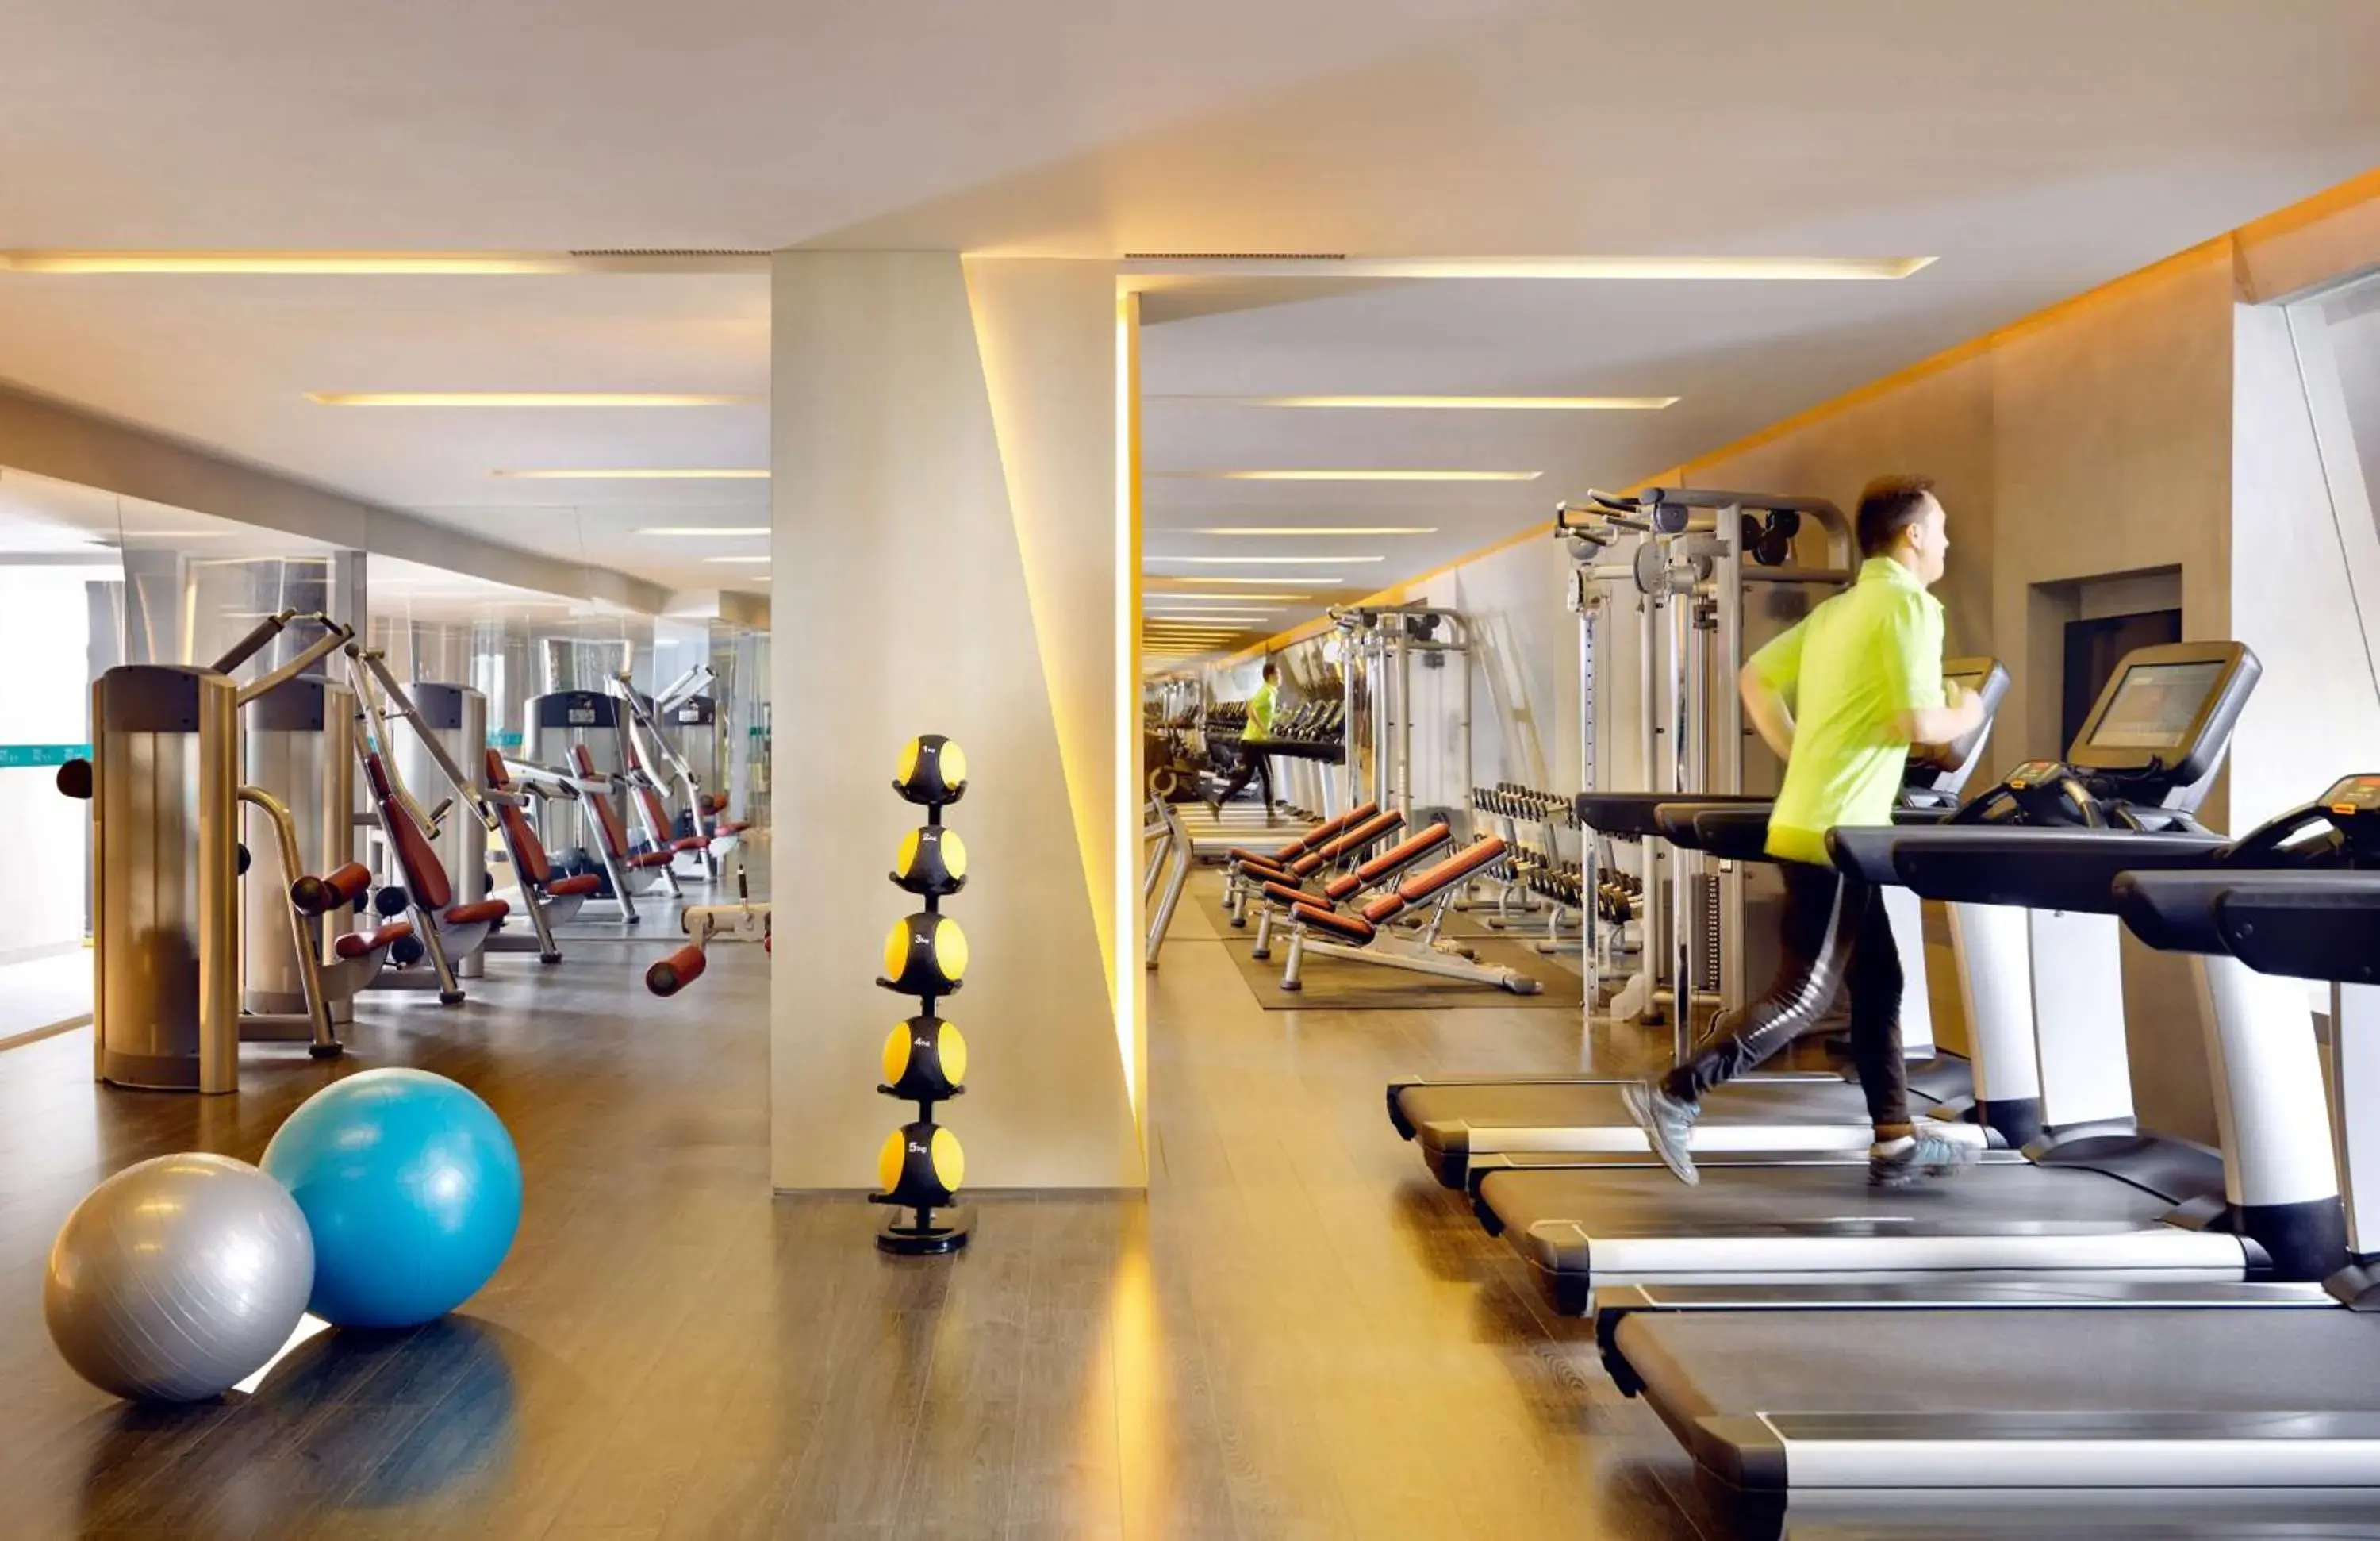 Fitness centre/facilities, Fitness Center/Facilities in Hyatt Regency Tianjin East